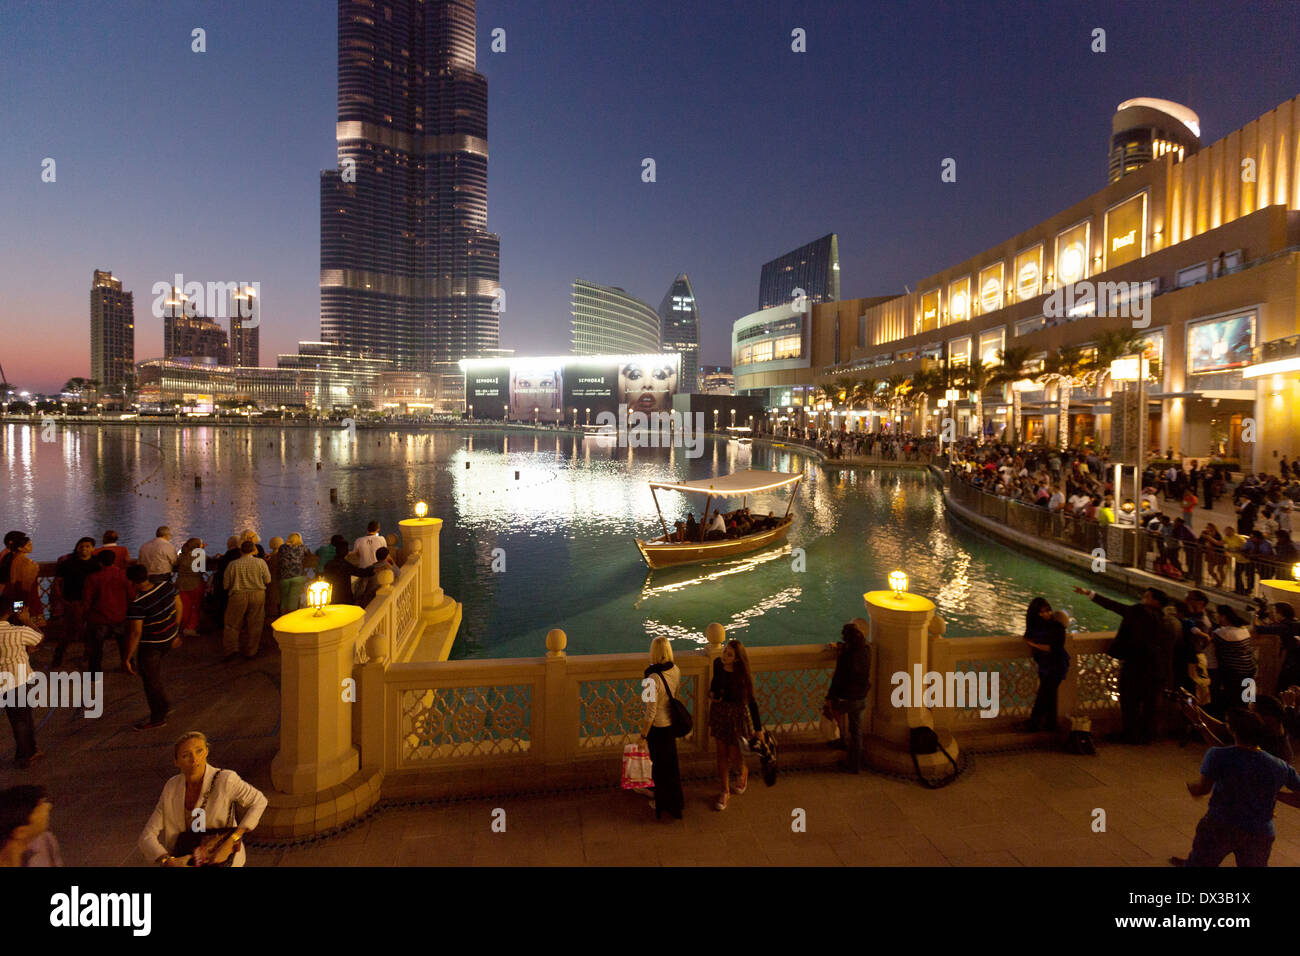 Dubai Mall and Lake at night, with tourist boats, Dubai, UAE, United Arab Emirates, Middle East Stock Photo